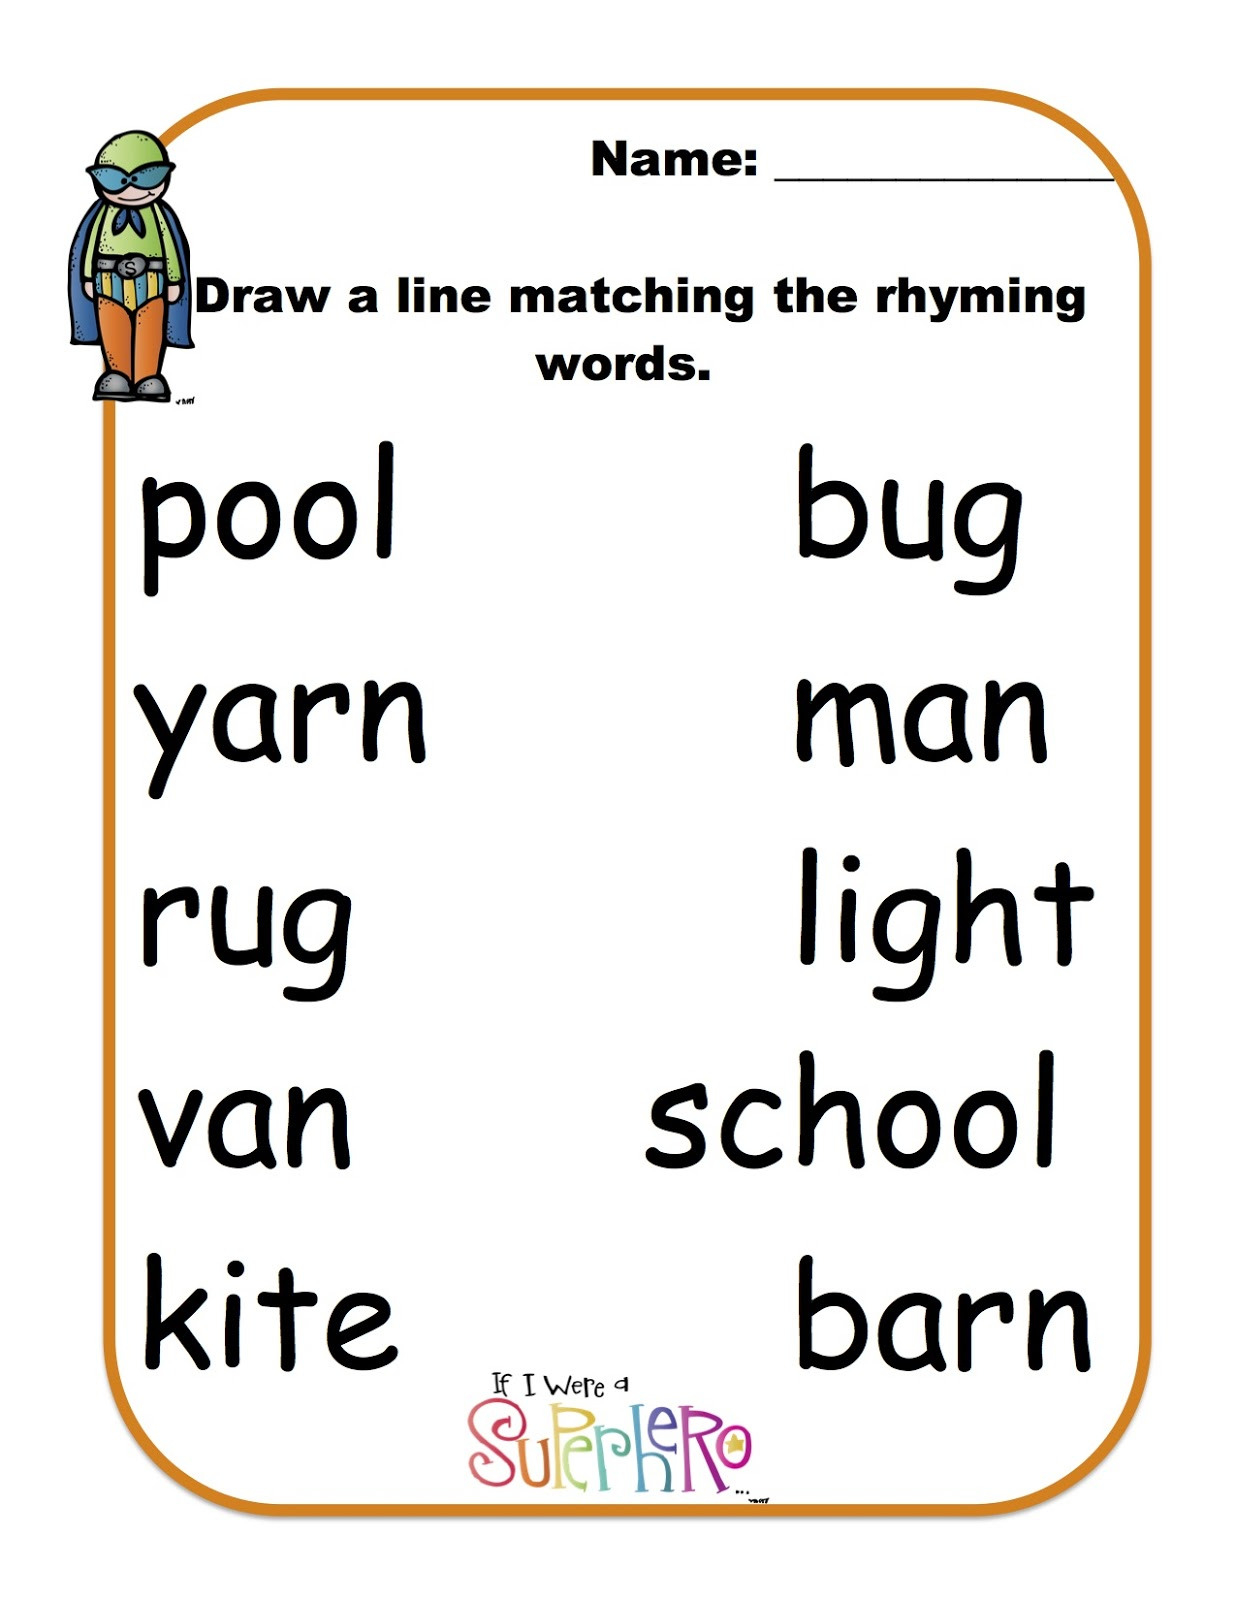 rhyming words for kindergarten